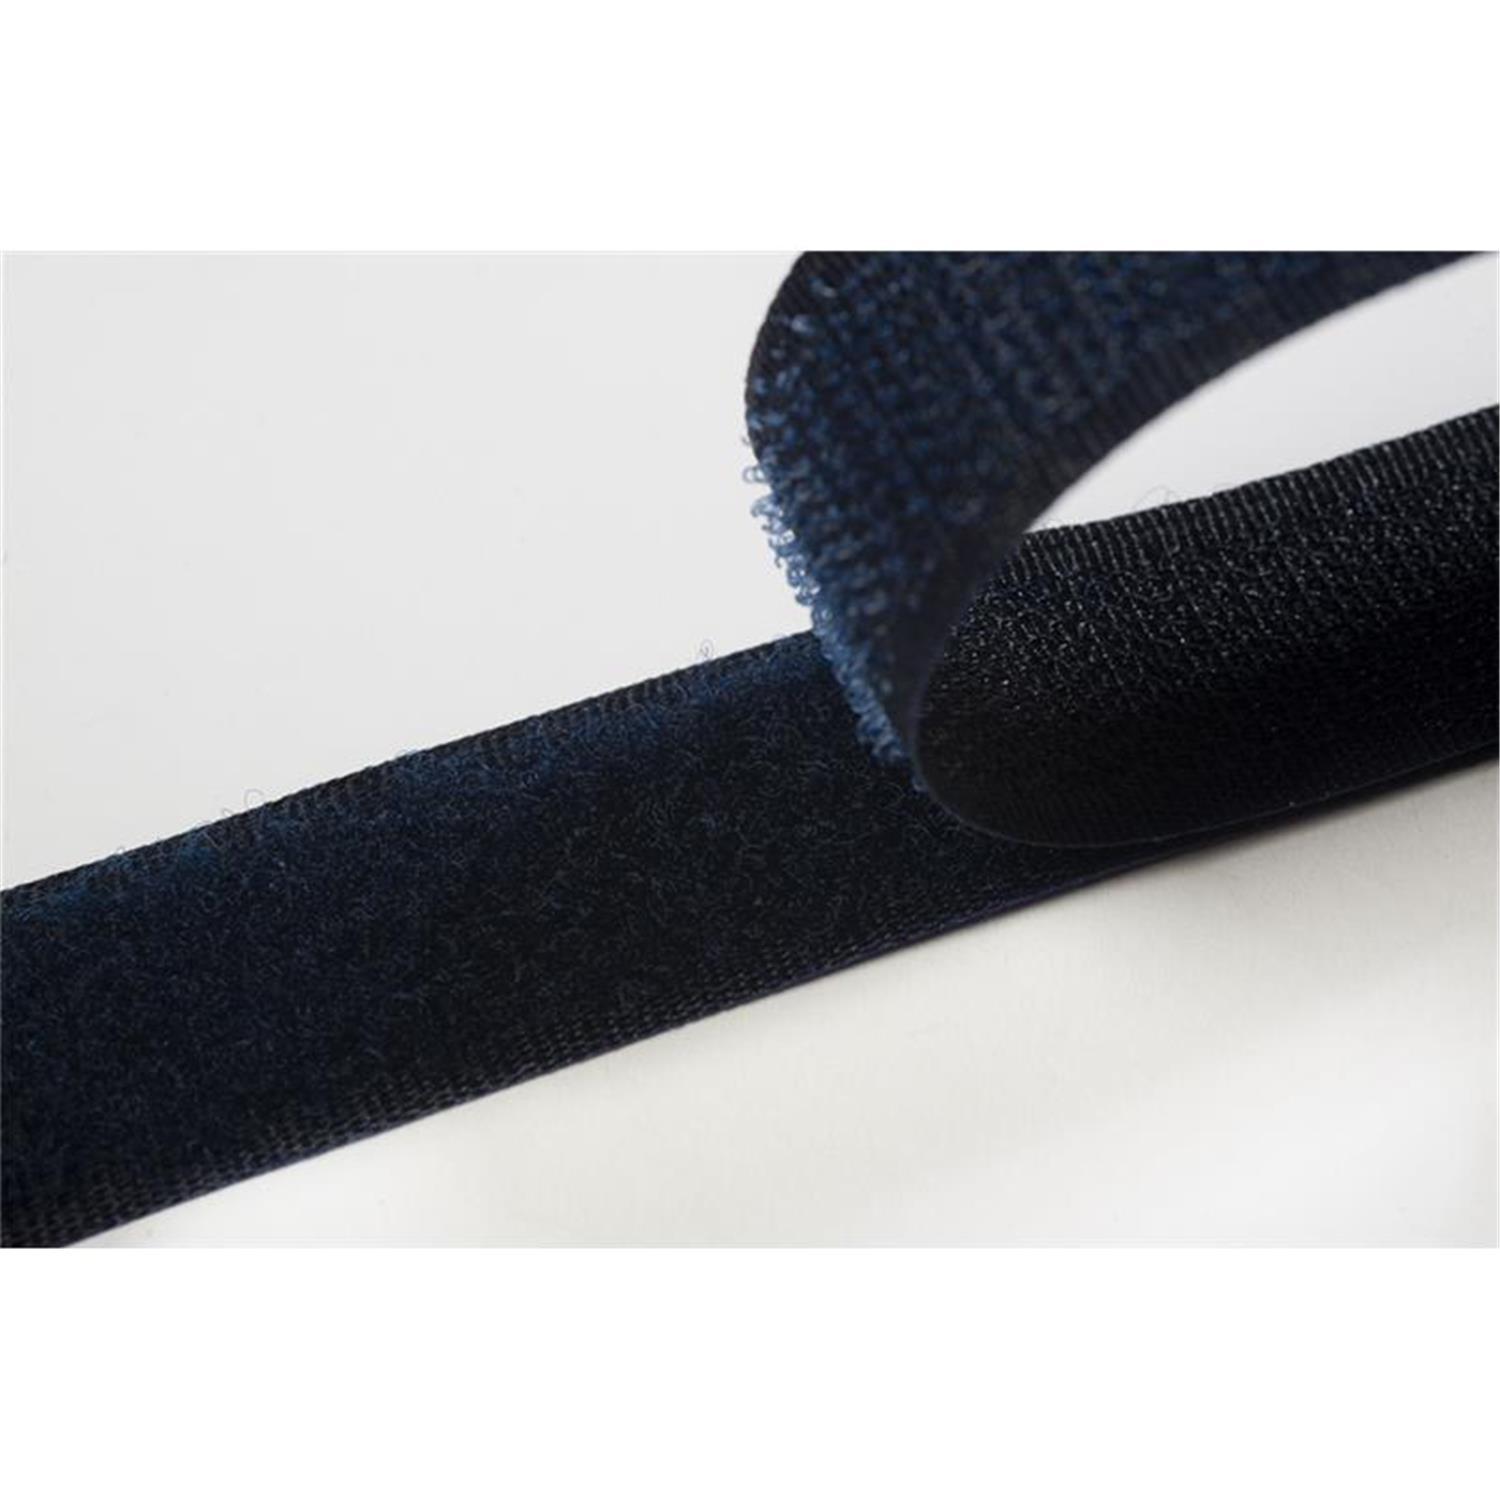 Klettband zum aufnähen, 50 mm, dunkelblau #07 4 Meter